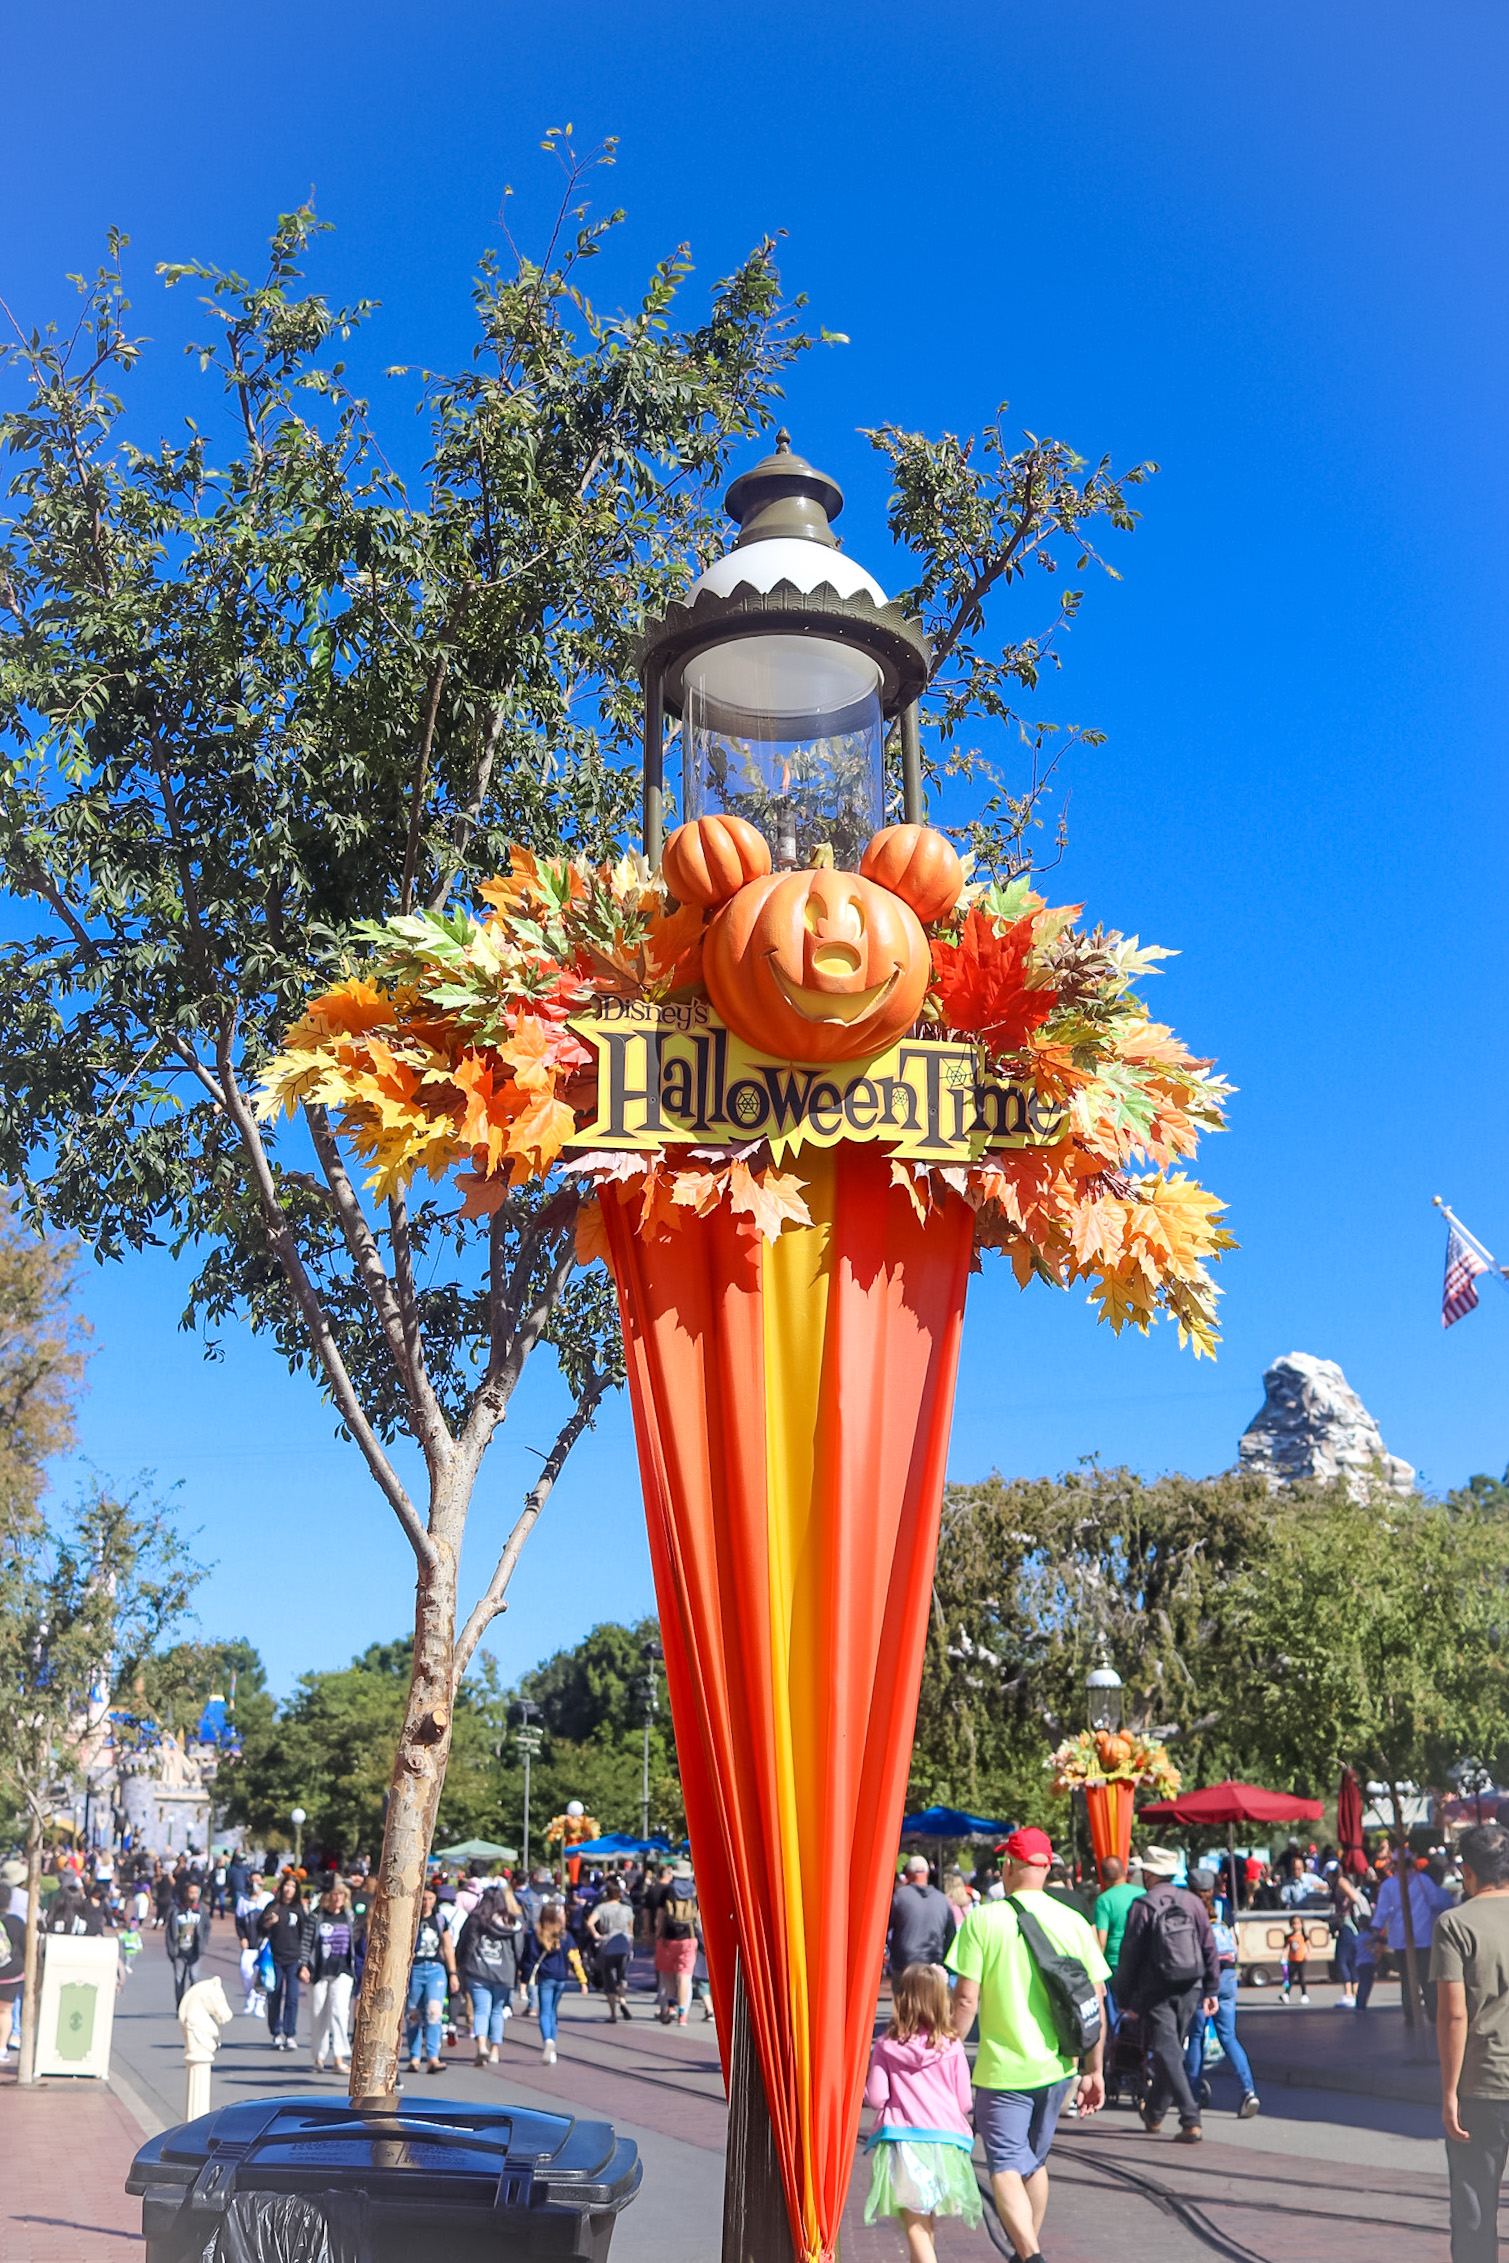 Disneyland for Halloween